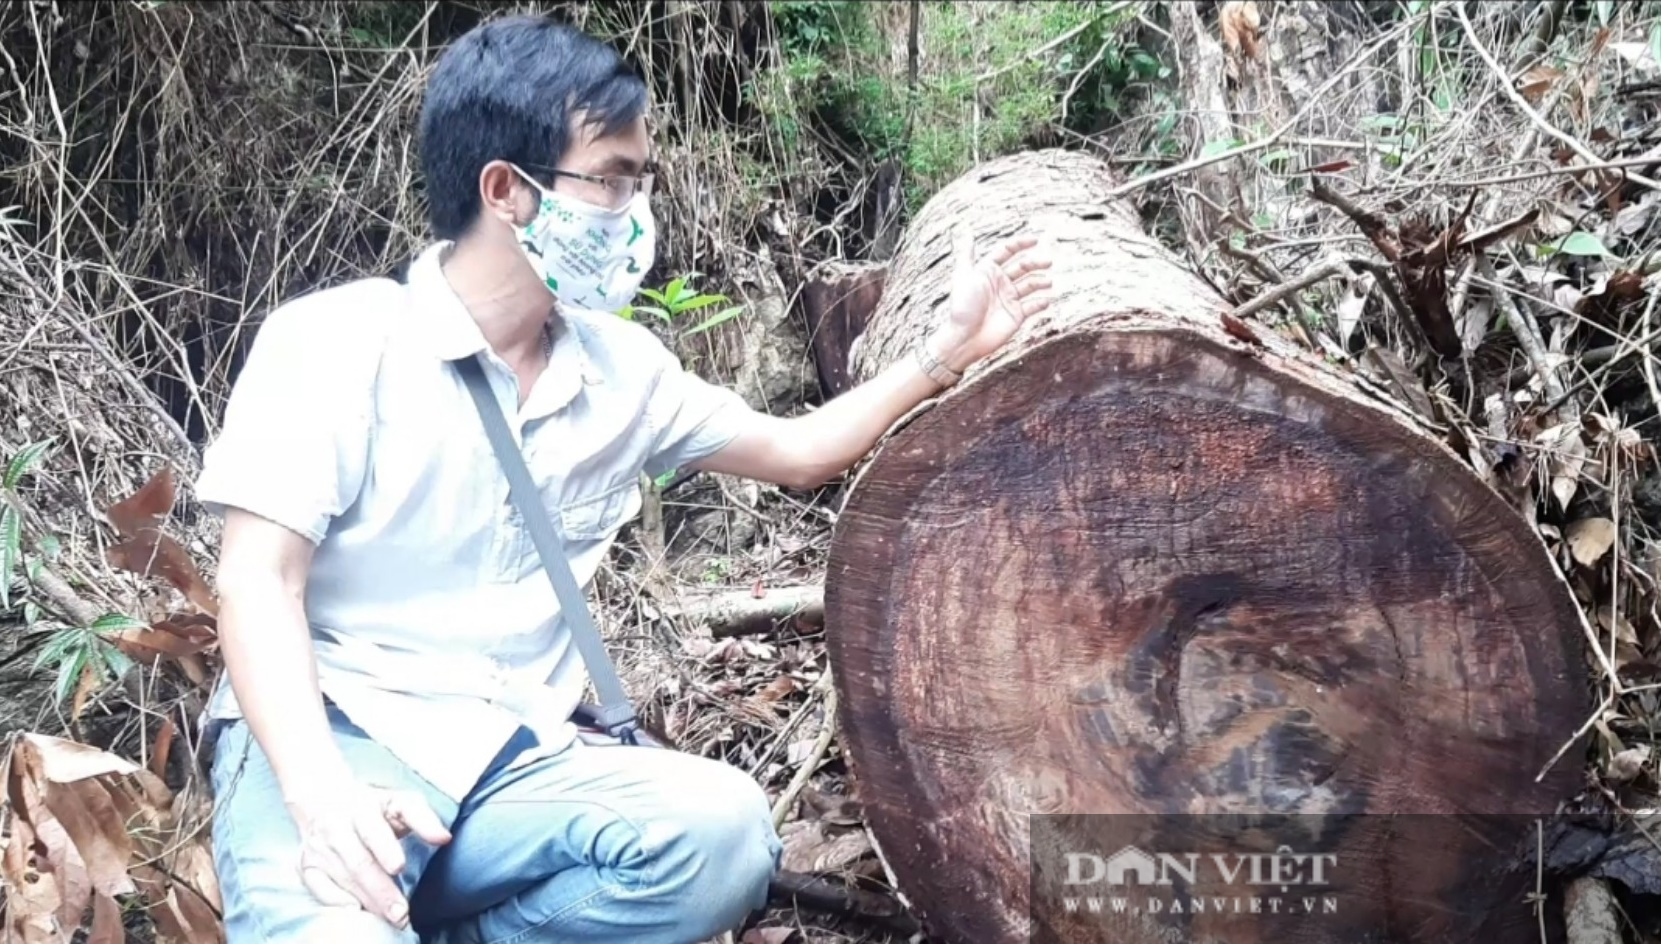 Chủ tịch UBND tỉnh Hà Giang vào hiện trường vụ phá rừng nghiến ở VQG Du Già - Ảnh 5.